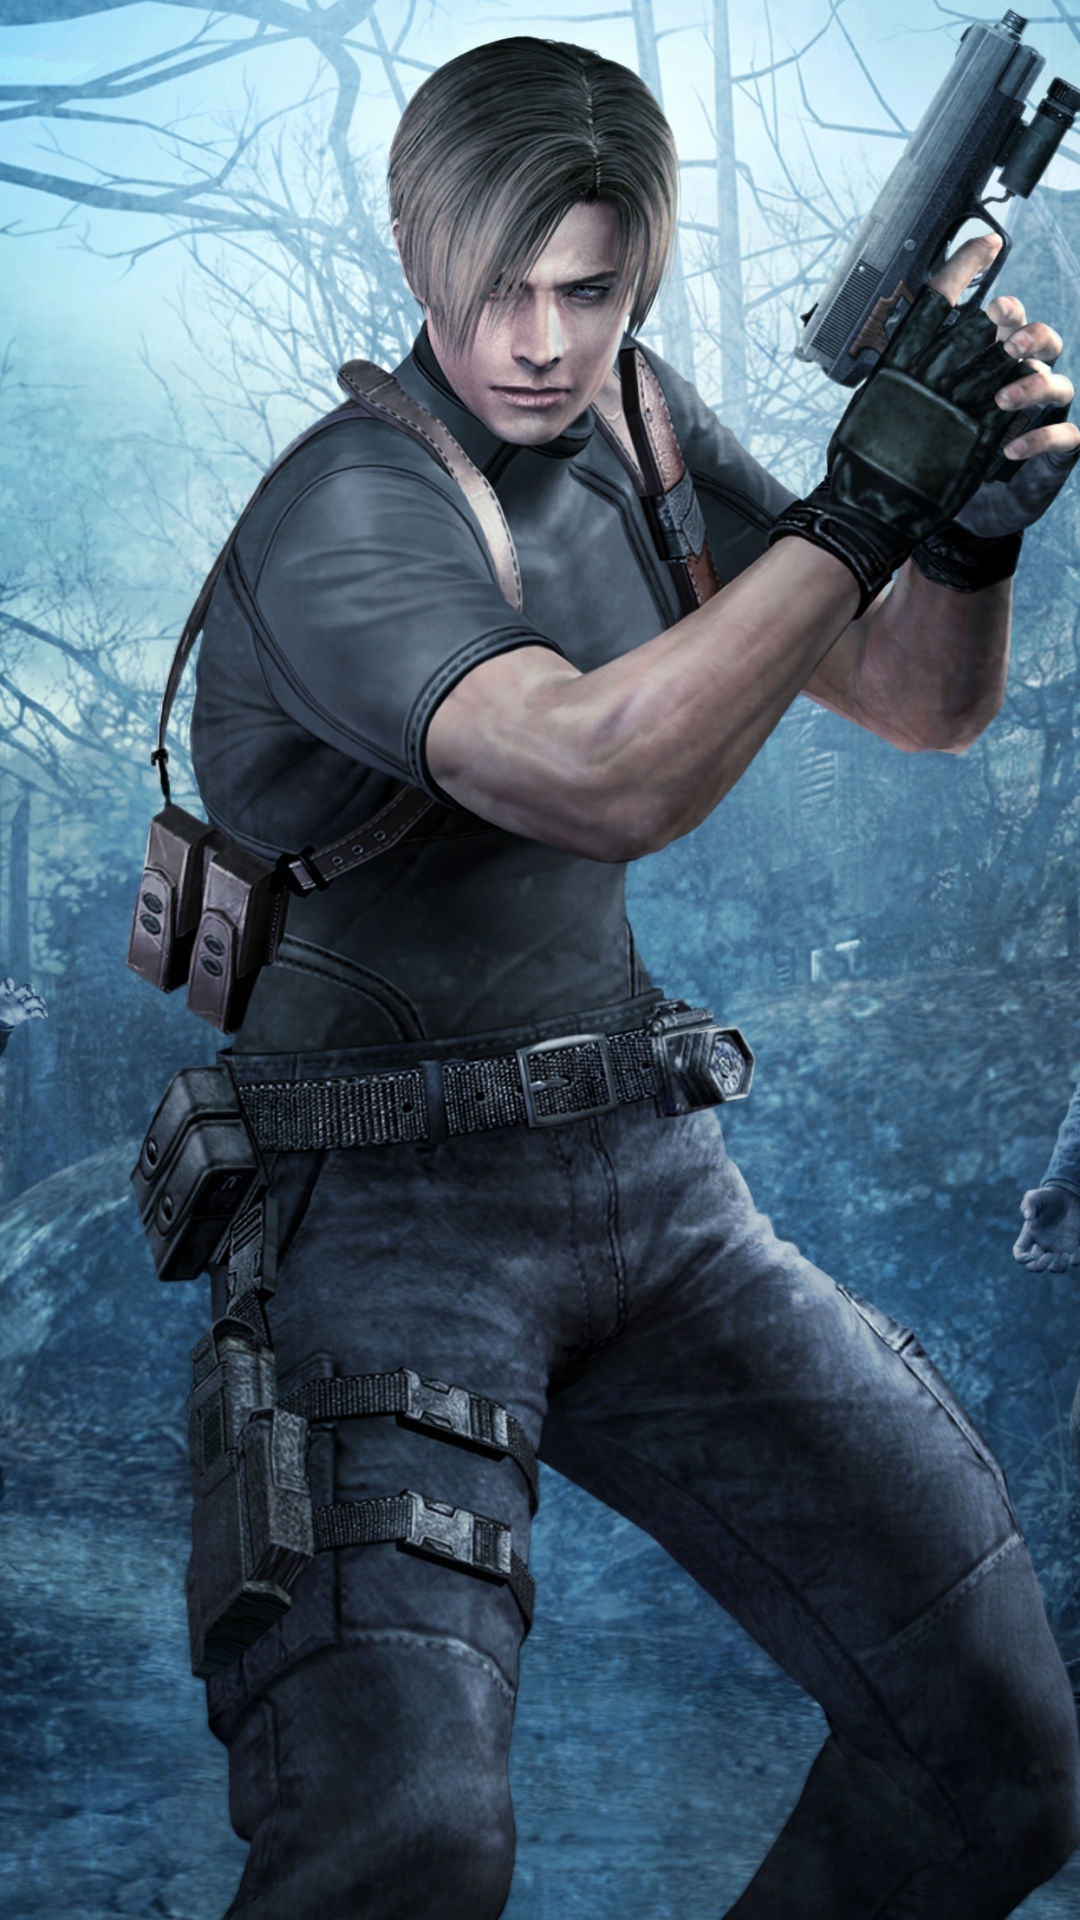 Download mobile wallpaper Resident Evil, Video Game, Leon S Kennedy, Resident Evil 4 for free.